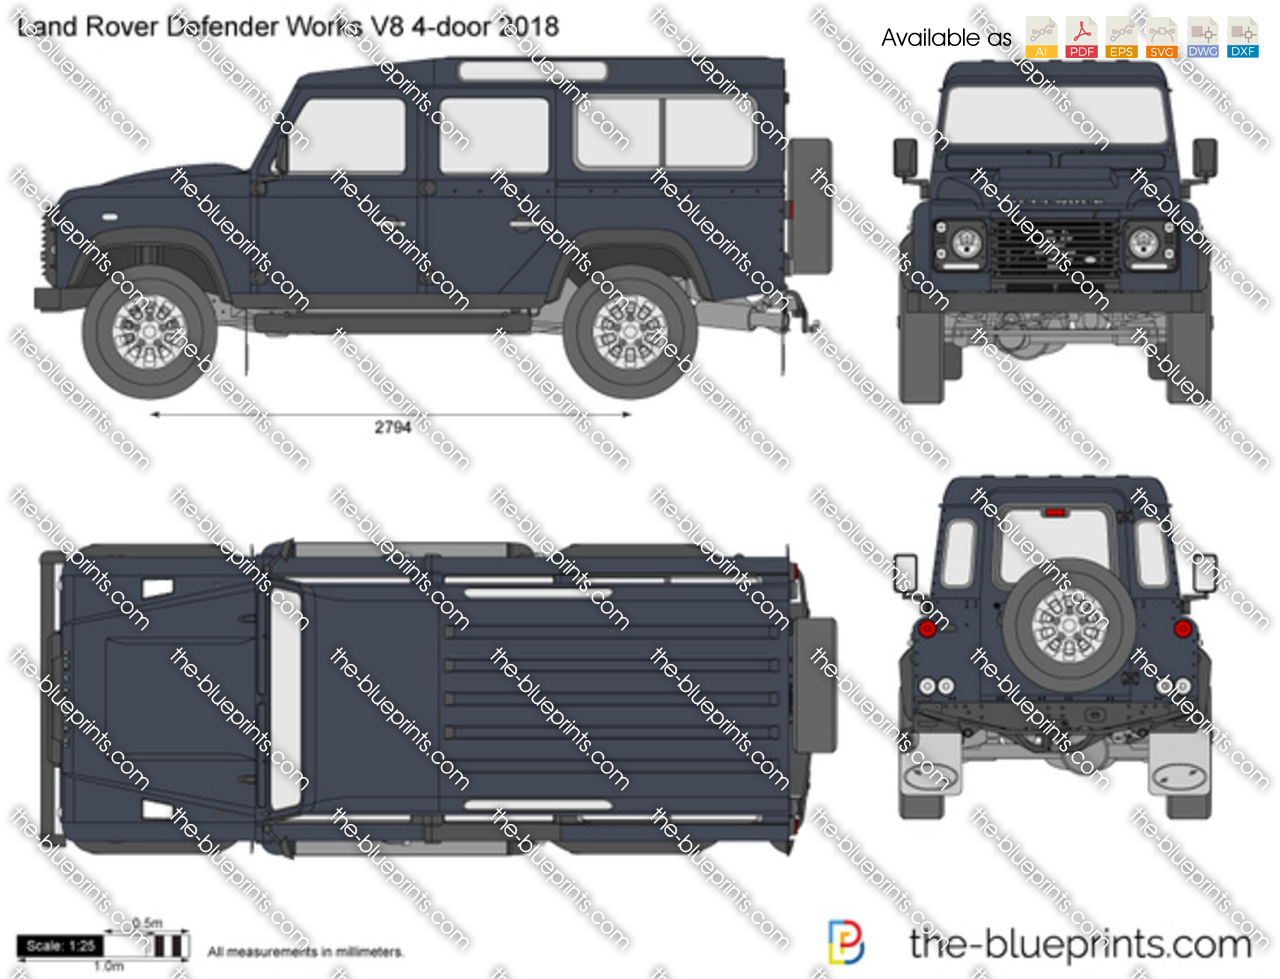 Land Rover Defender Works V8 4-door